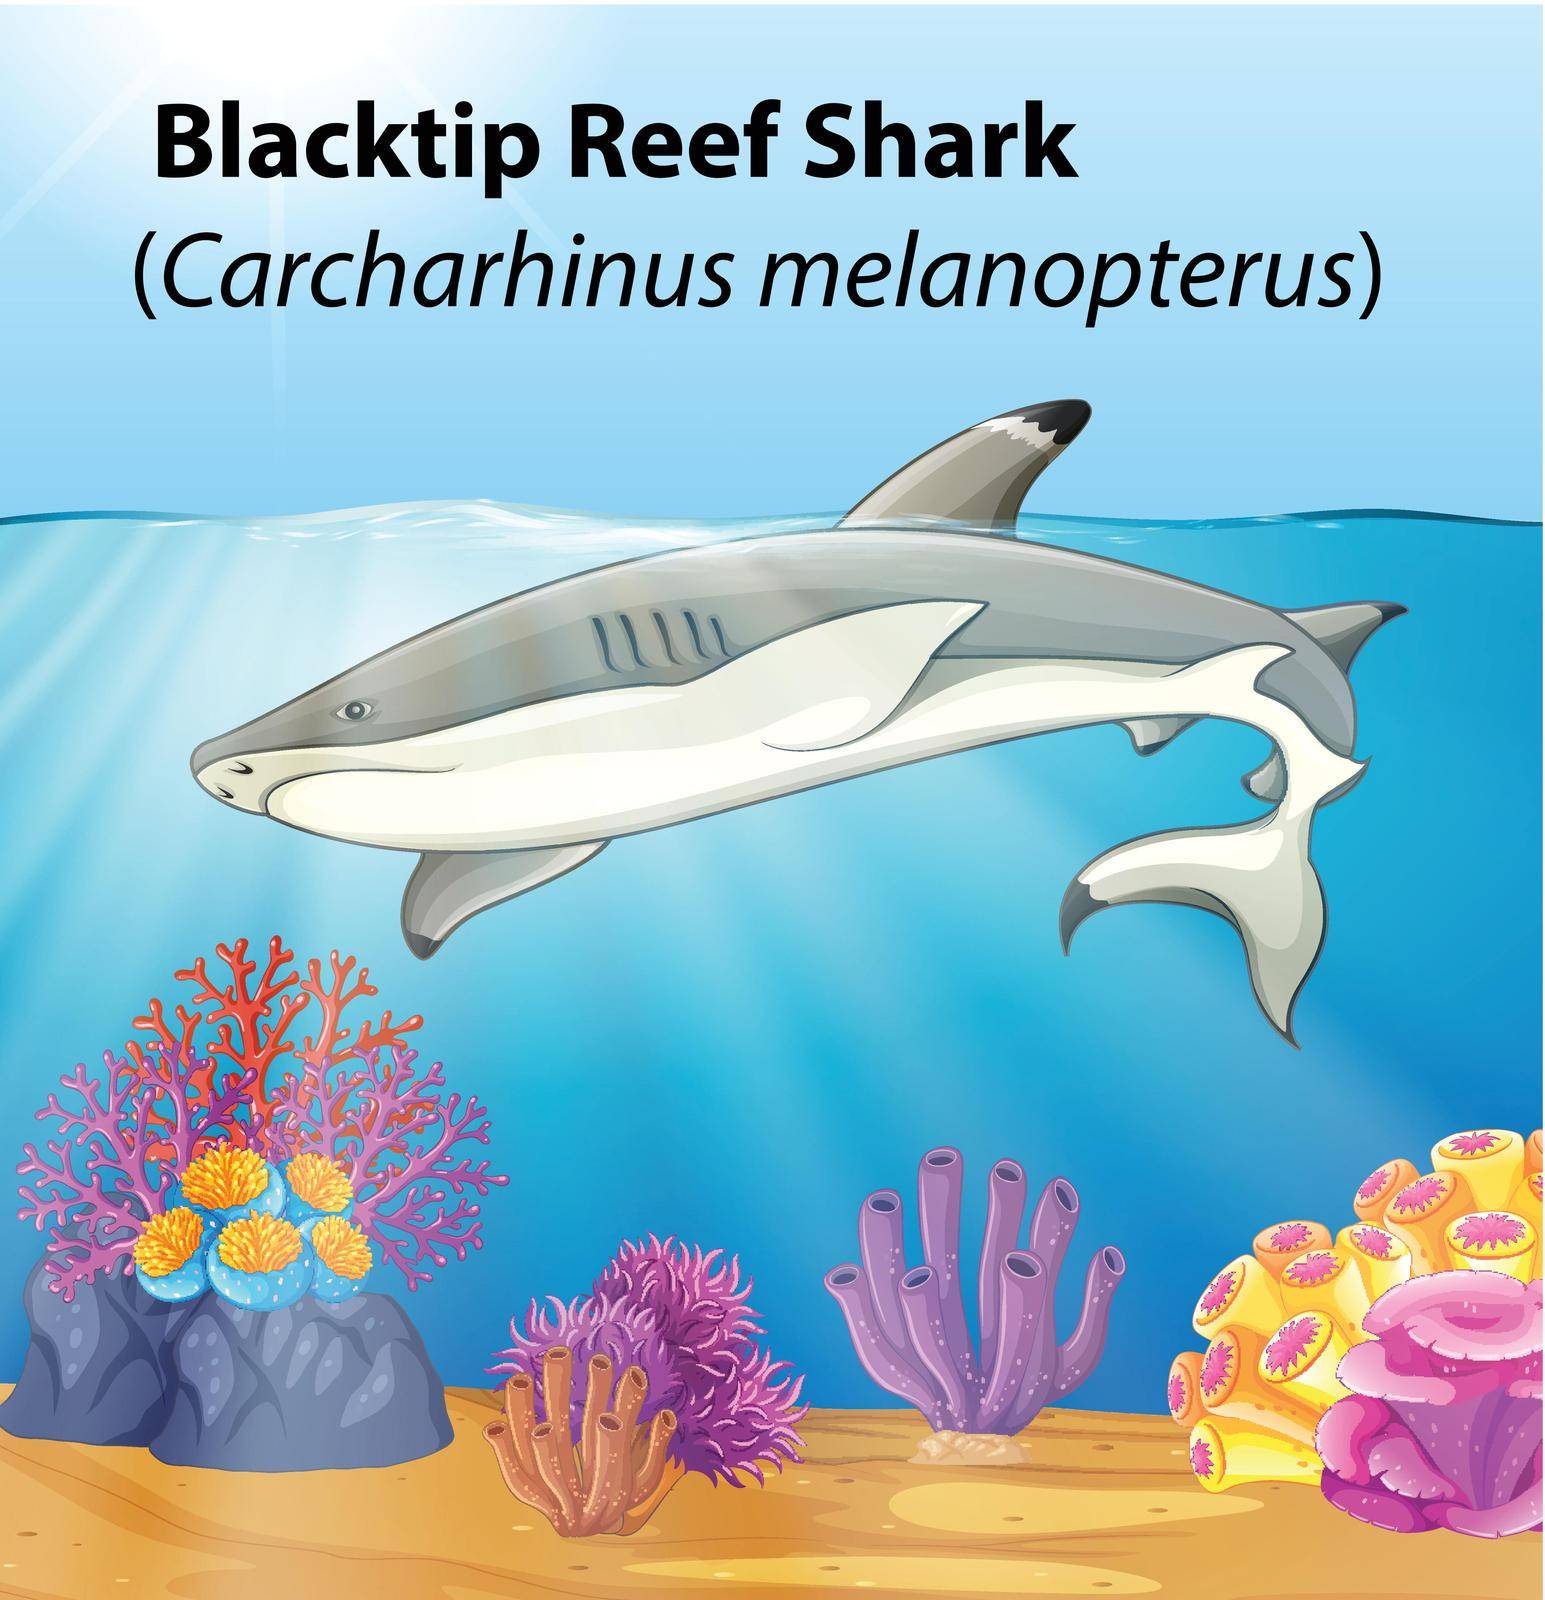 A blacktip reef shark illustration